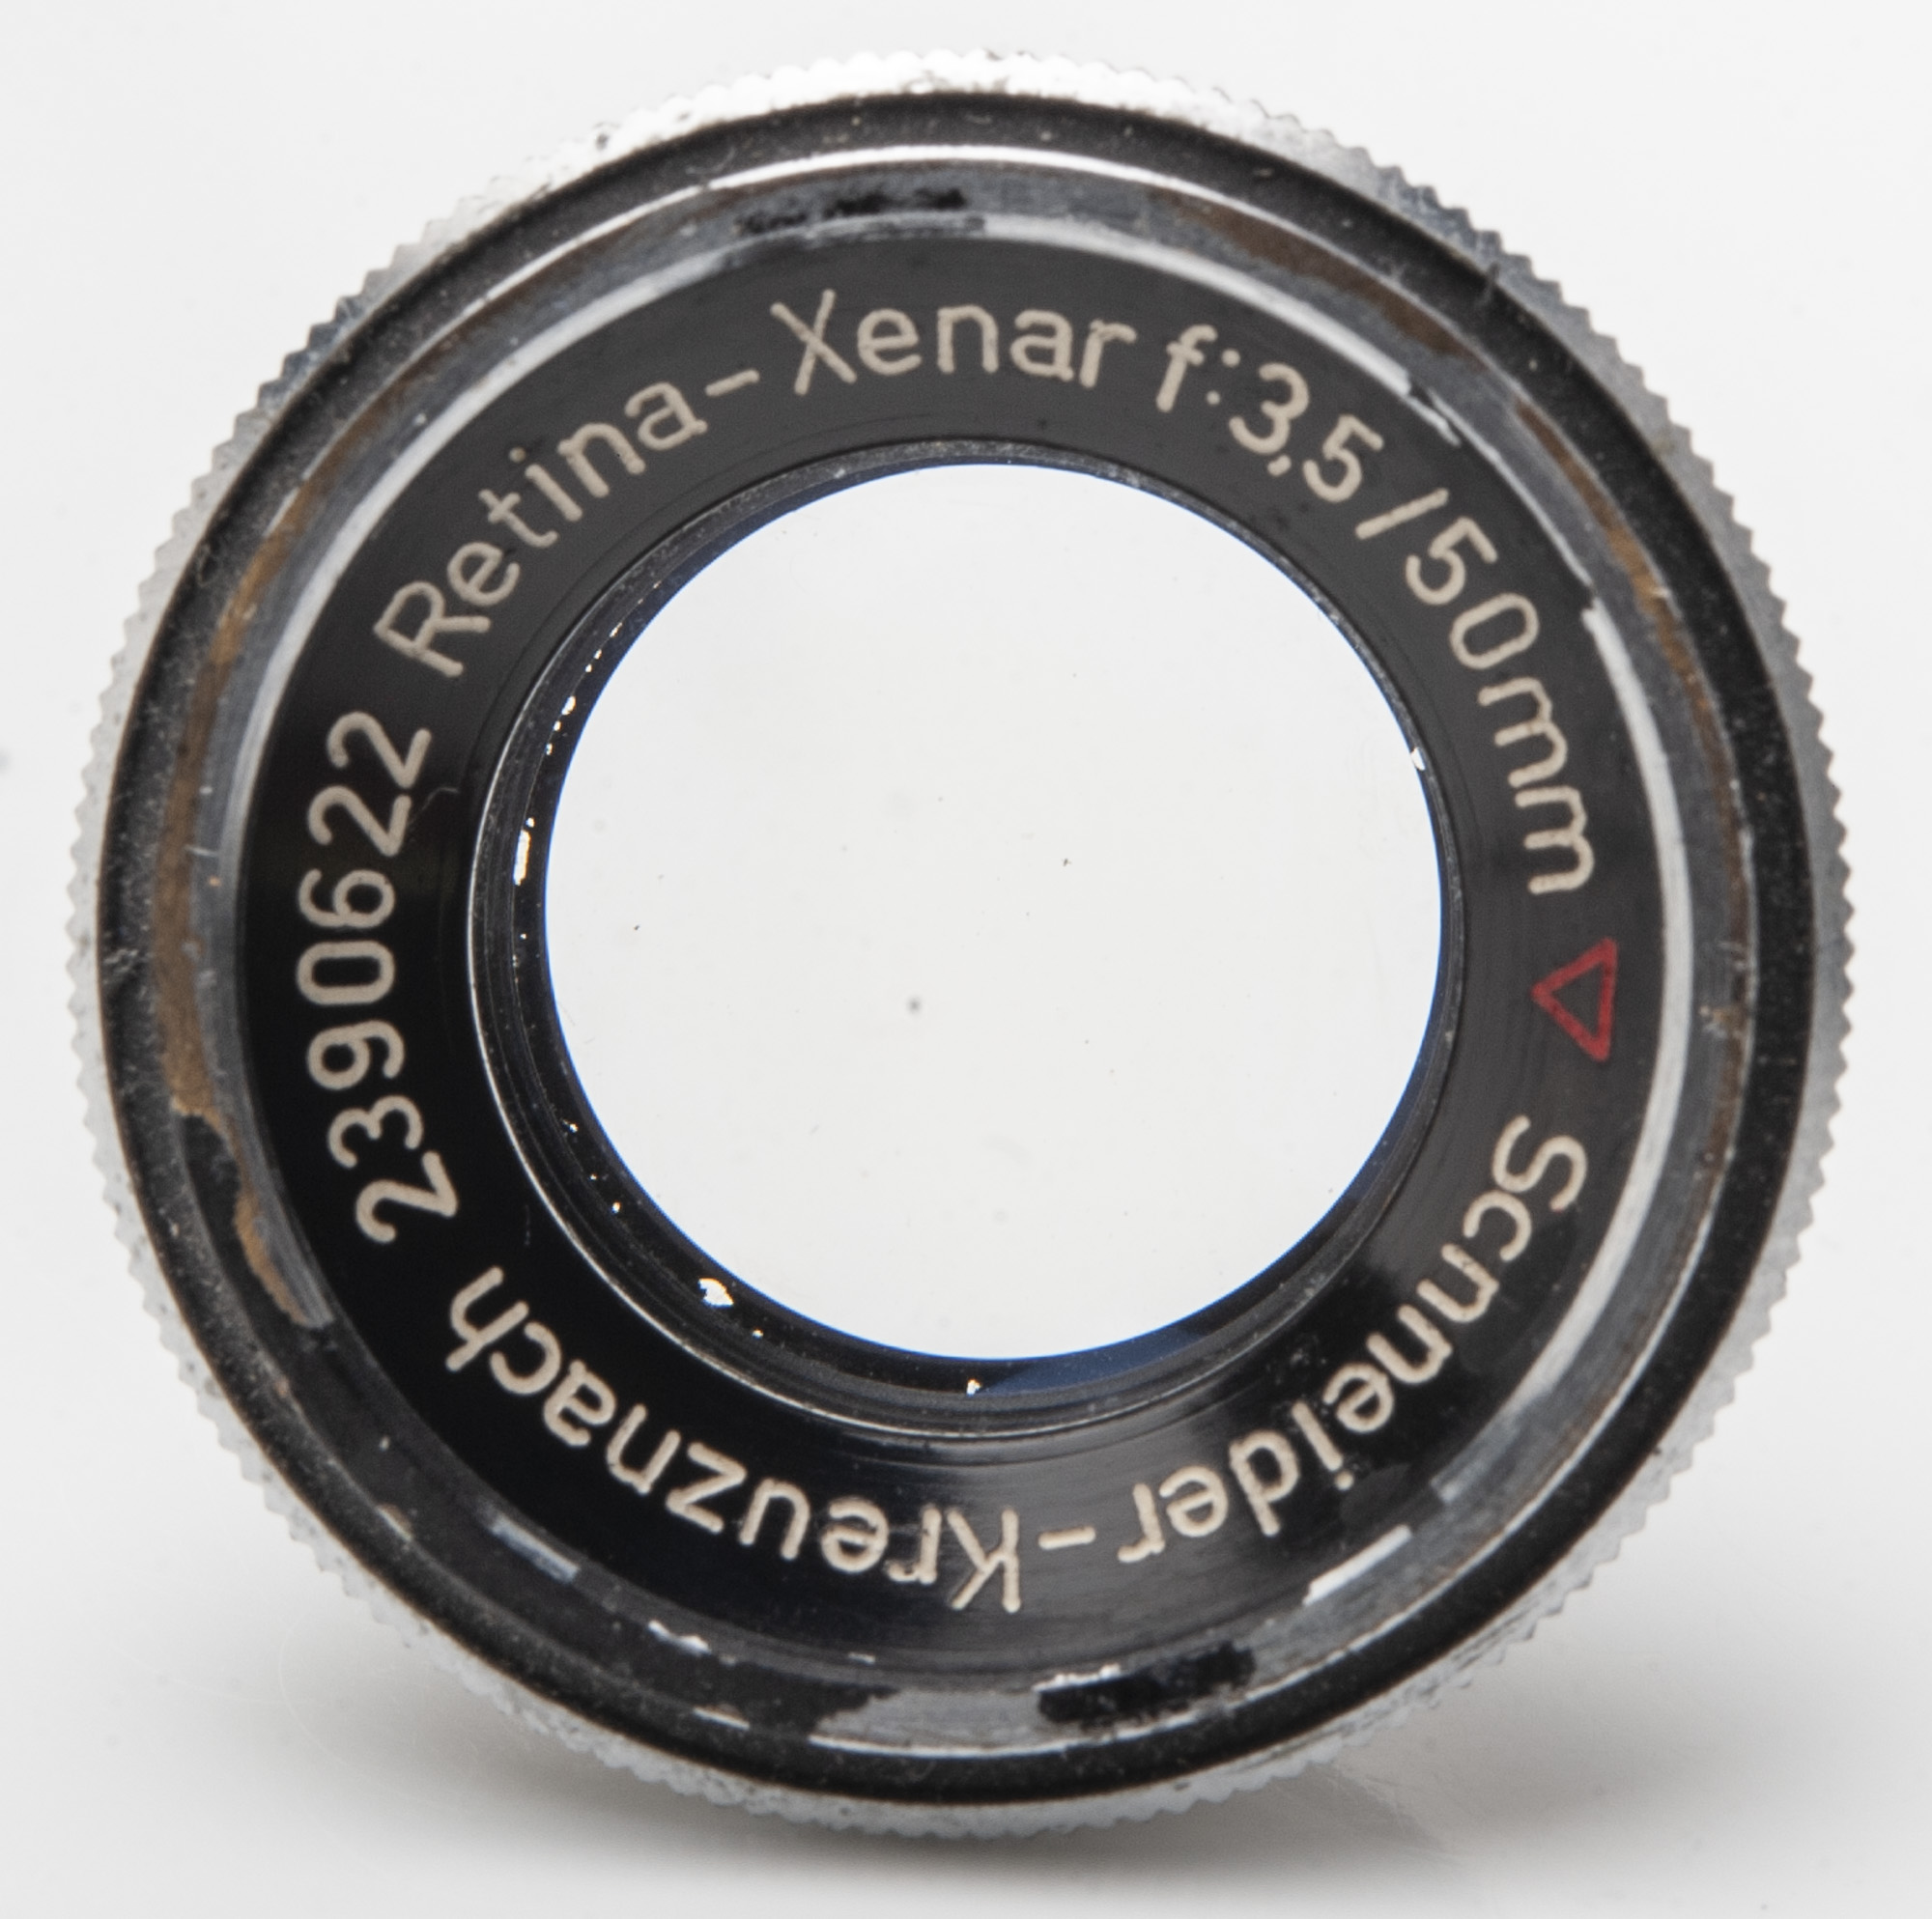 Schneider Kreuznach Retina-Xenar 3.5 50mm Synchro Compur - Kodak 